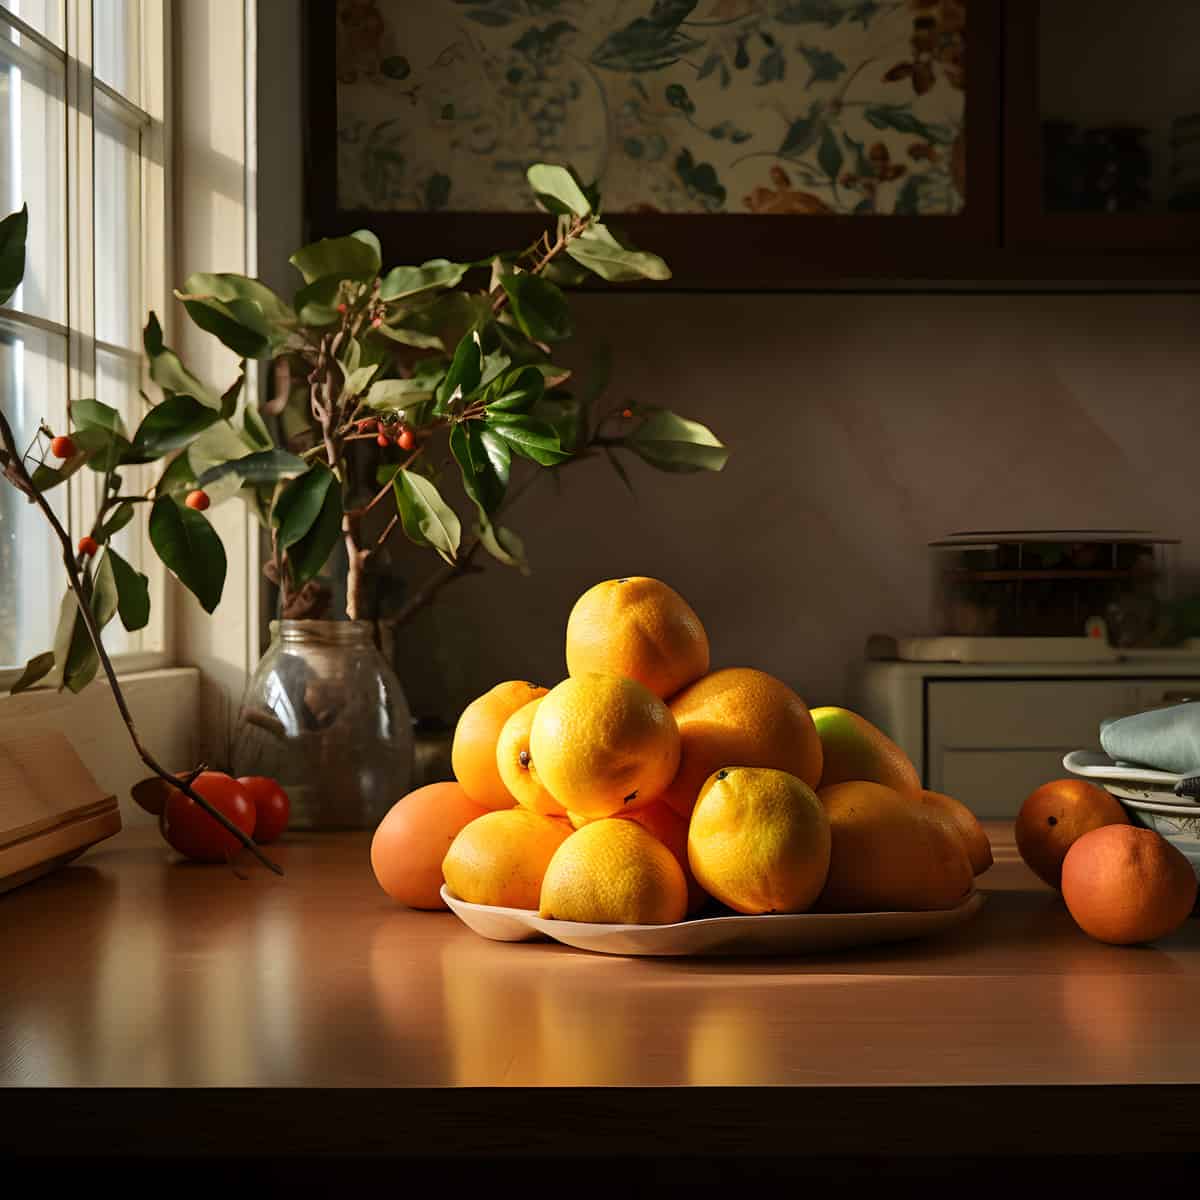 Amanatsu Fruit on a kitchen counter